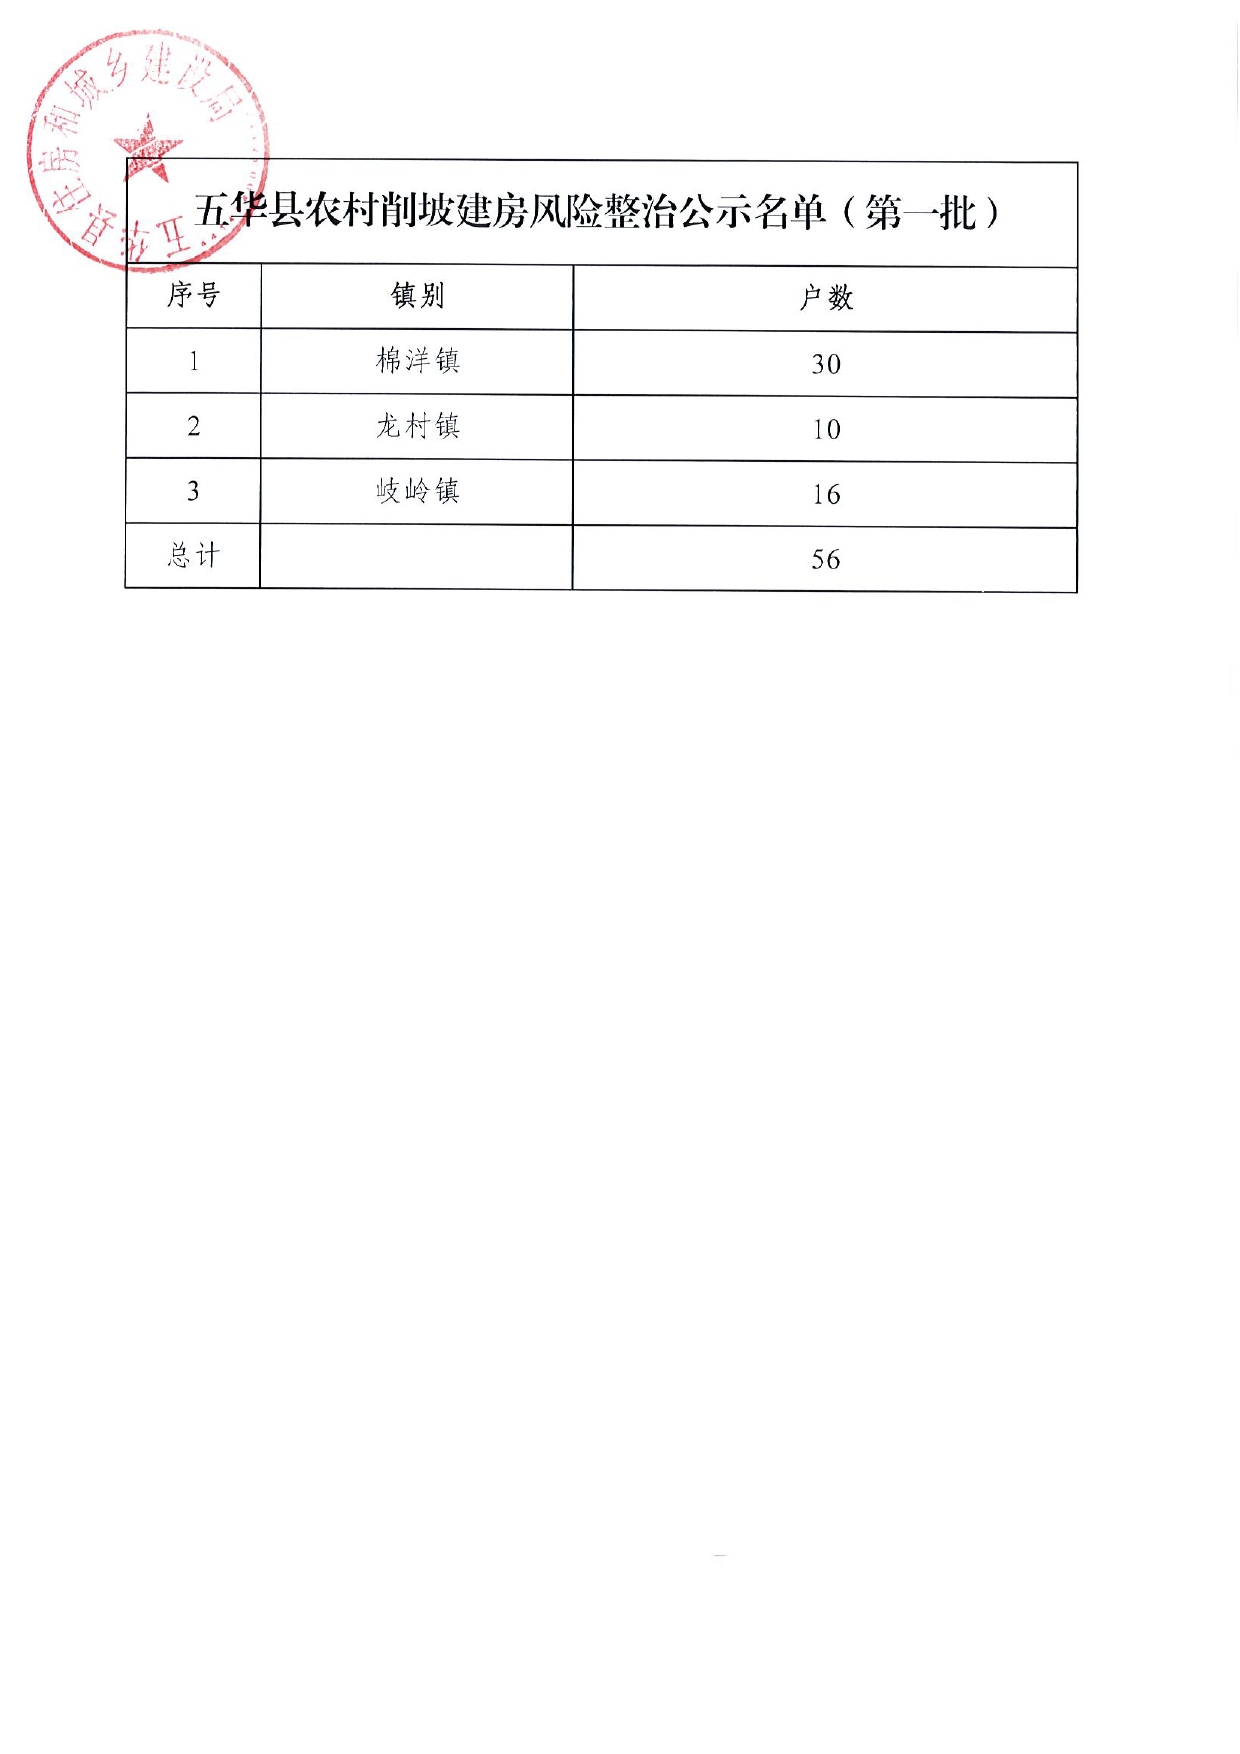 五华县农村削坡建房风险整治第一批补助对象名单公示0001.jpg